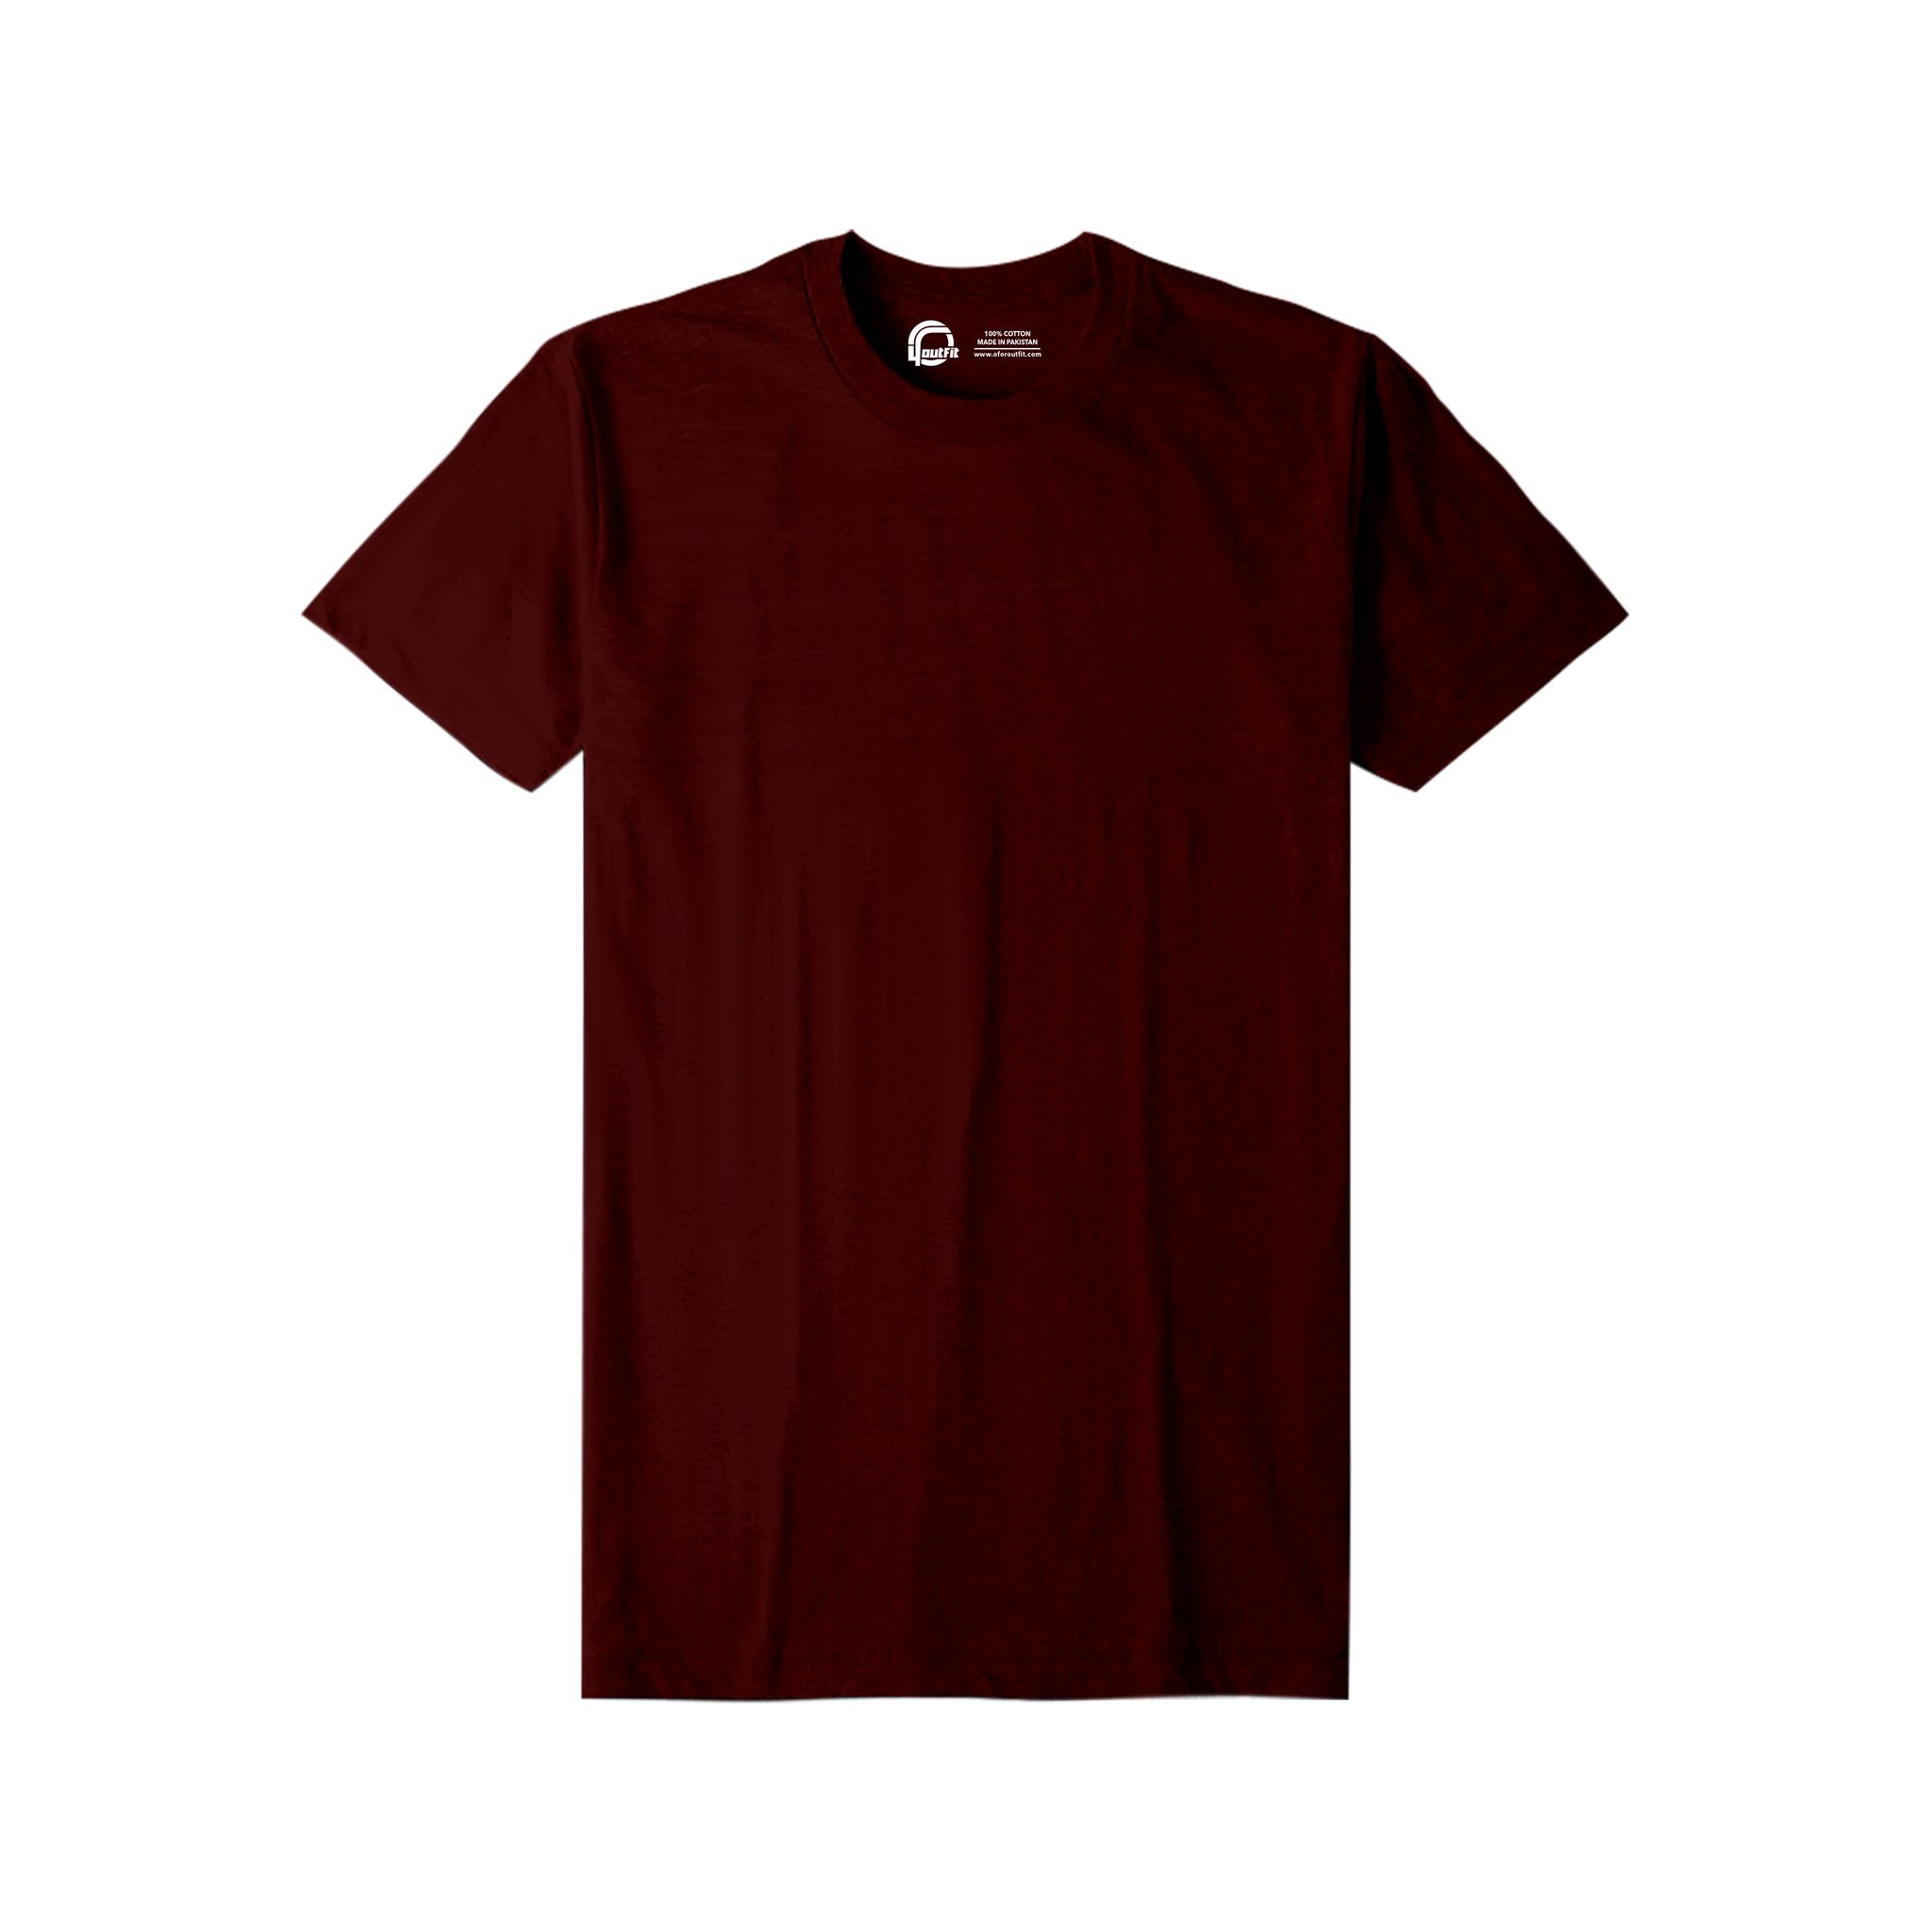 Maroon - Basic T-Shirts